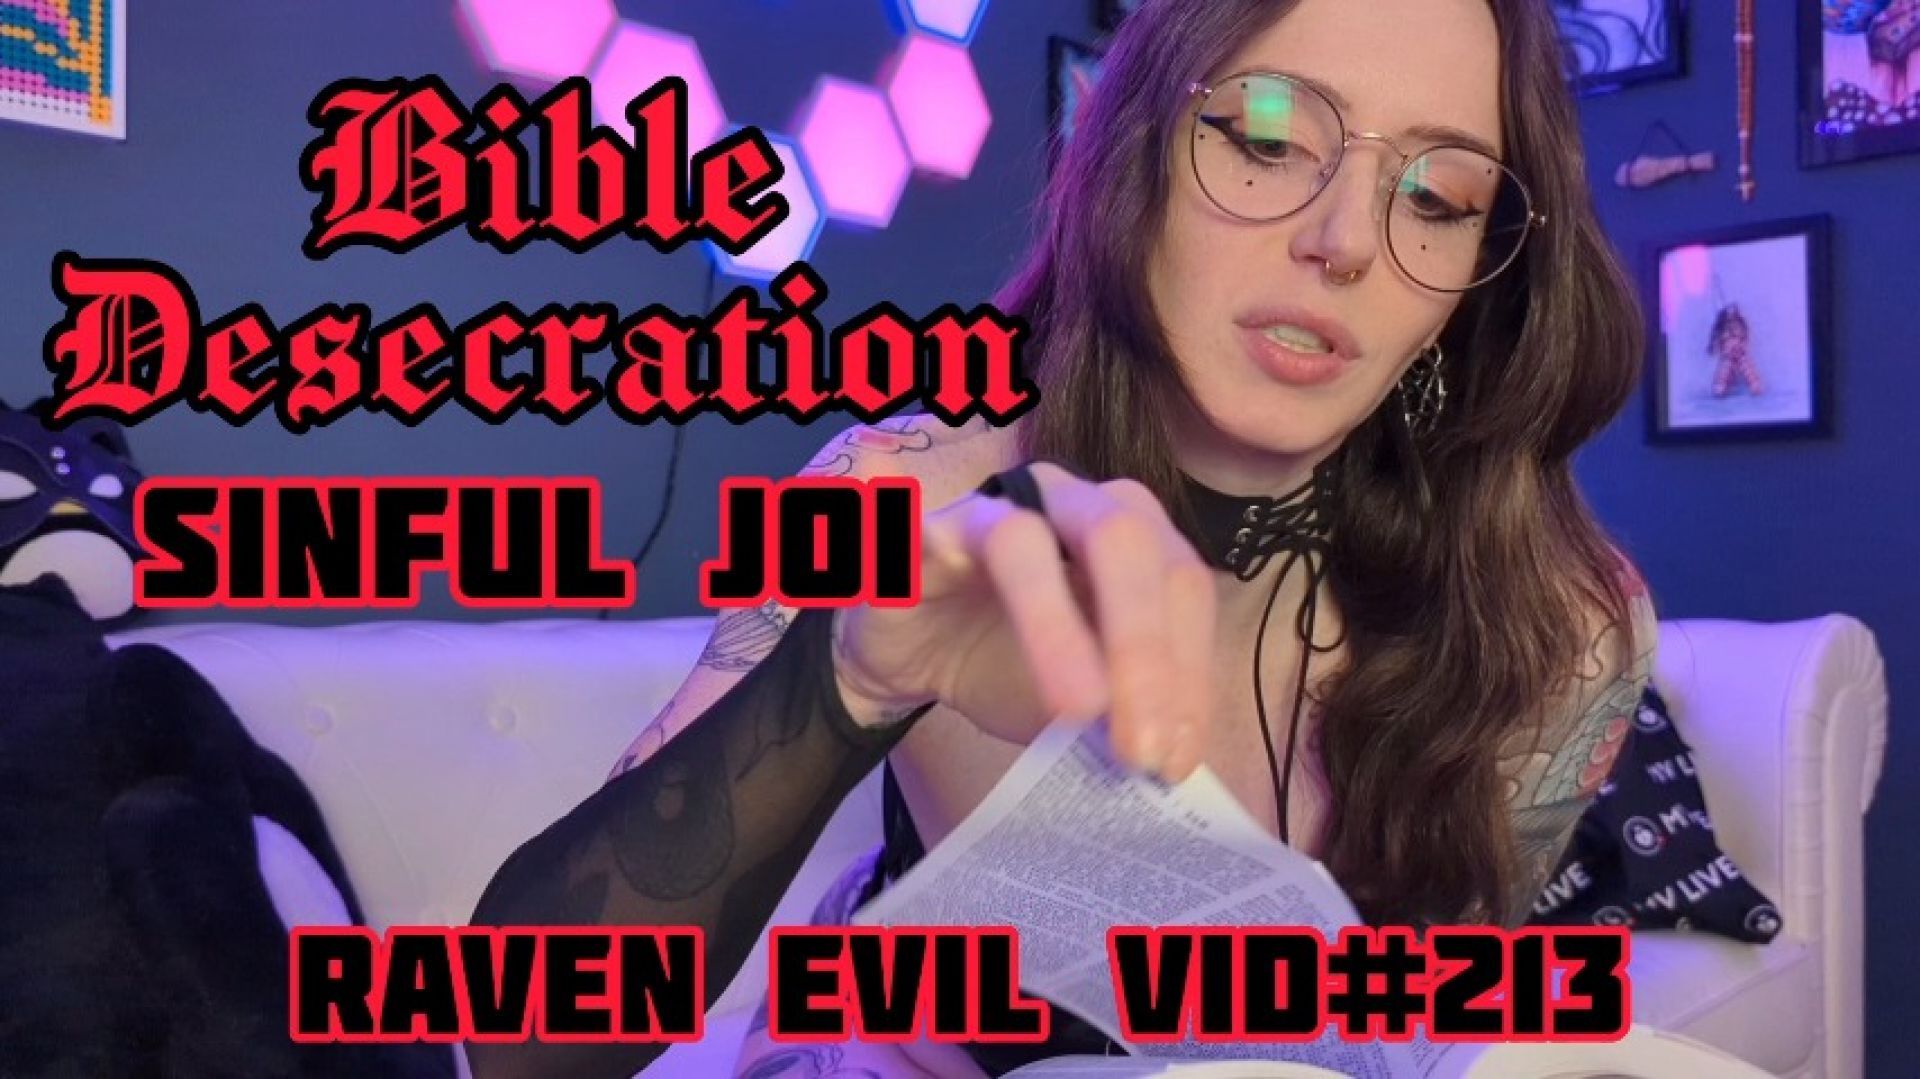 Bible Desecration - Sinful JOI